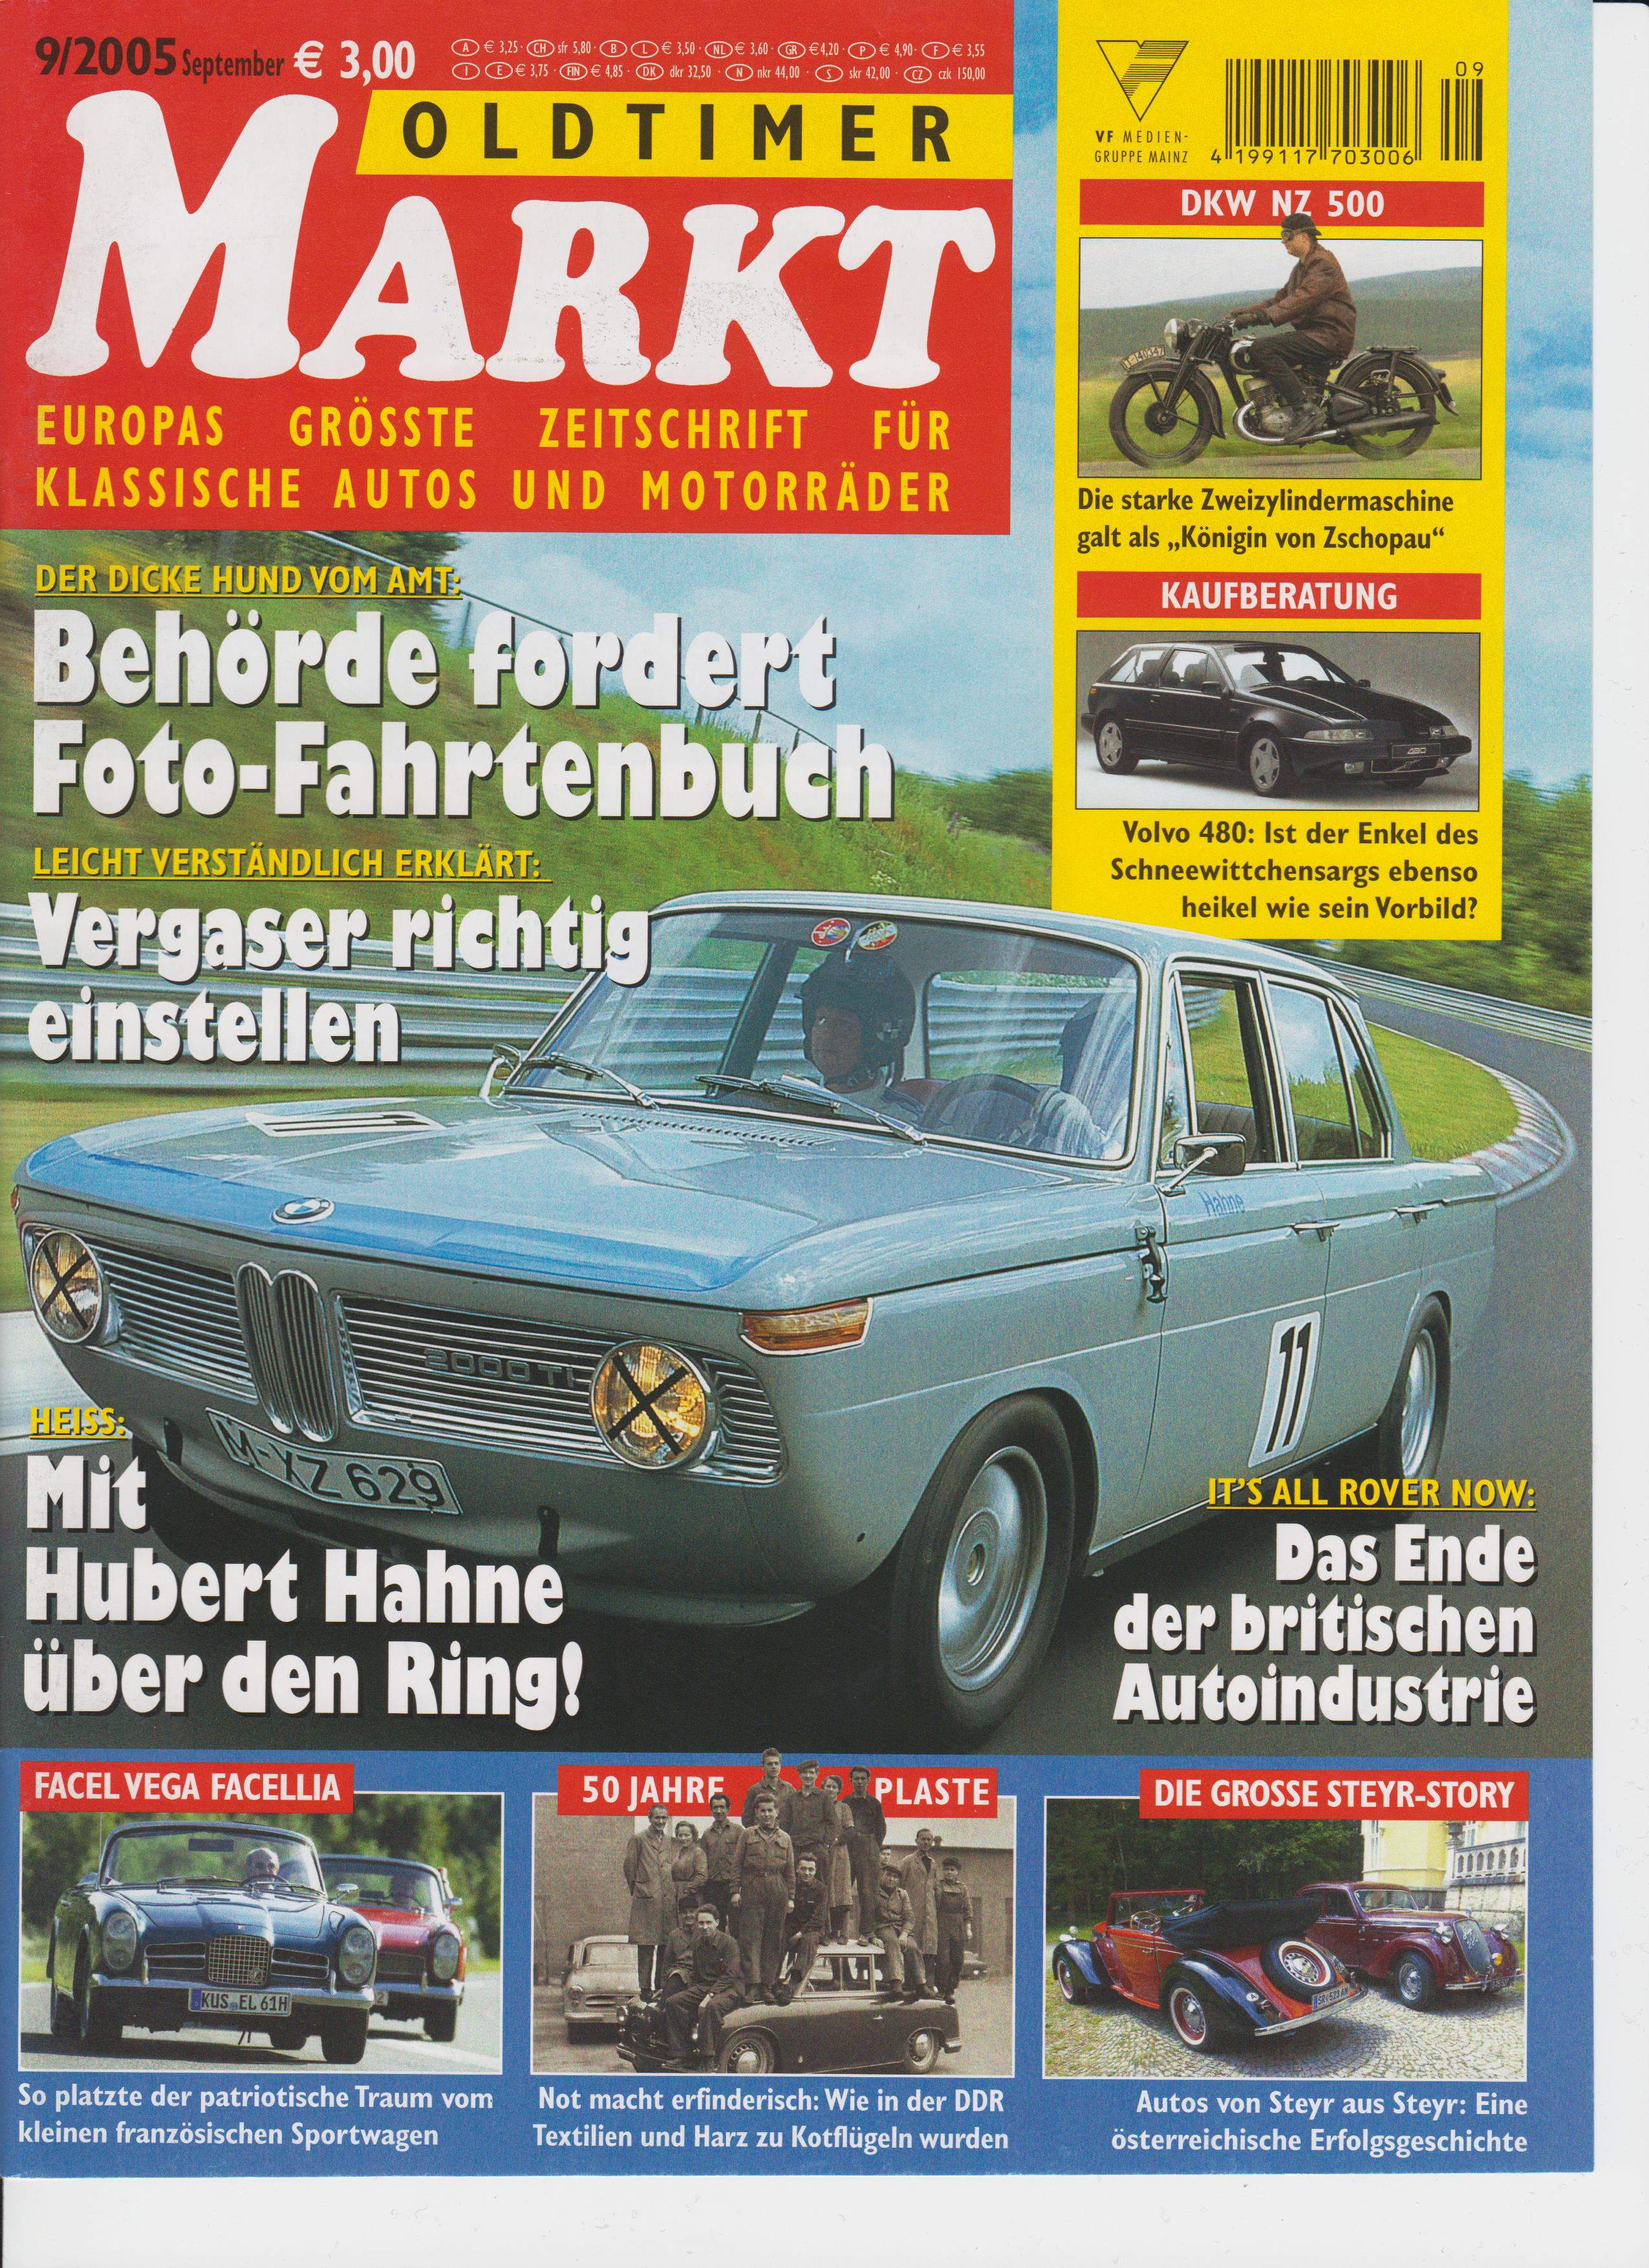 Fachzeitschrift Oldtimer Markt 09 2005